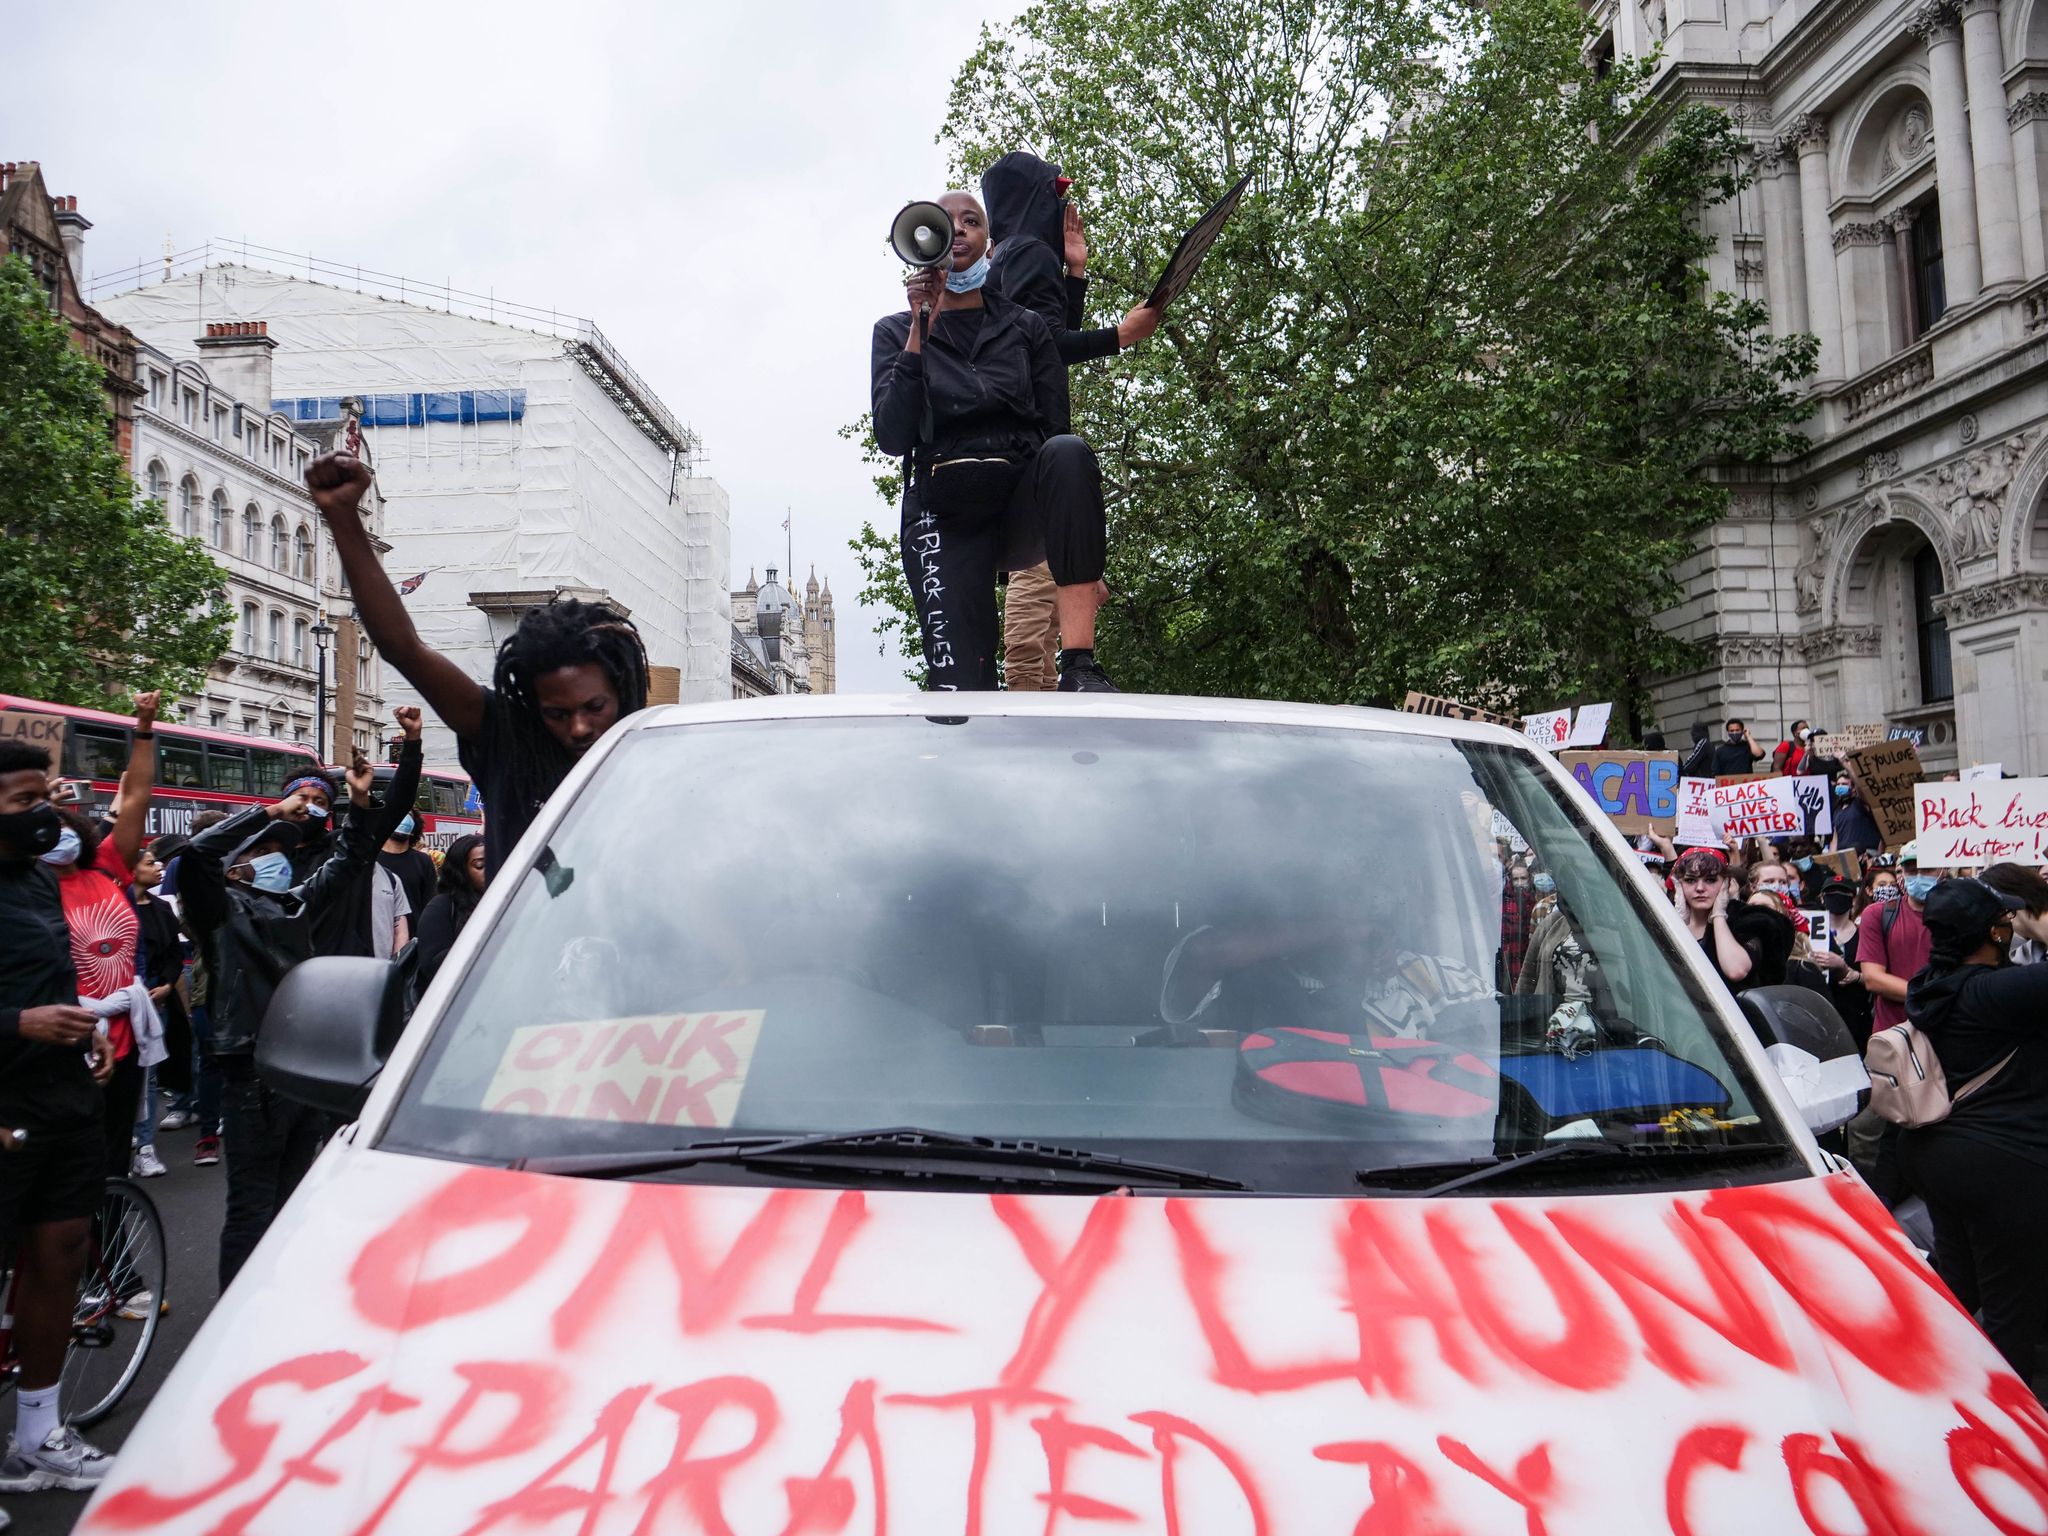 protestors in central london